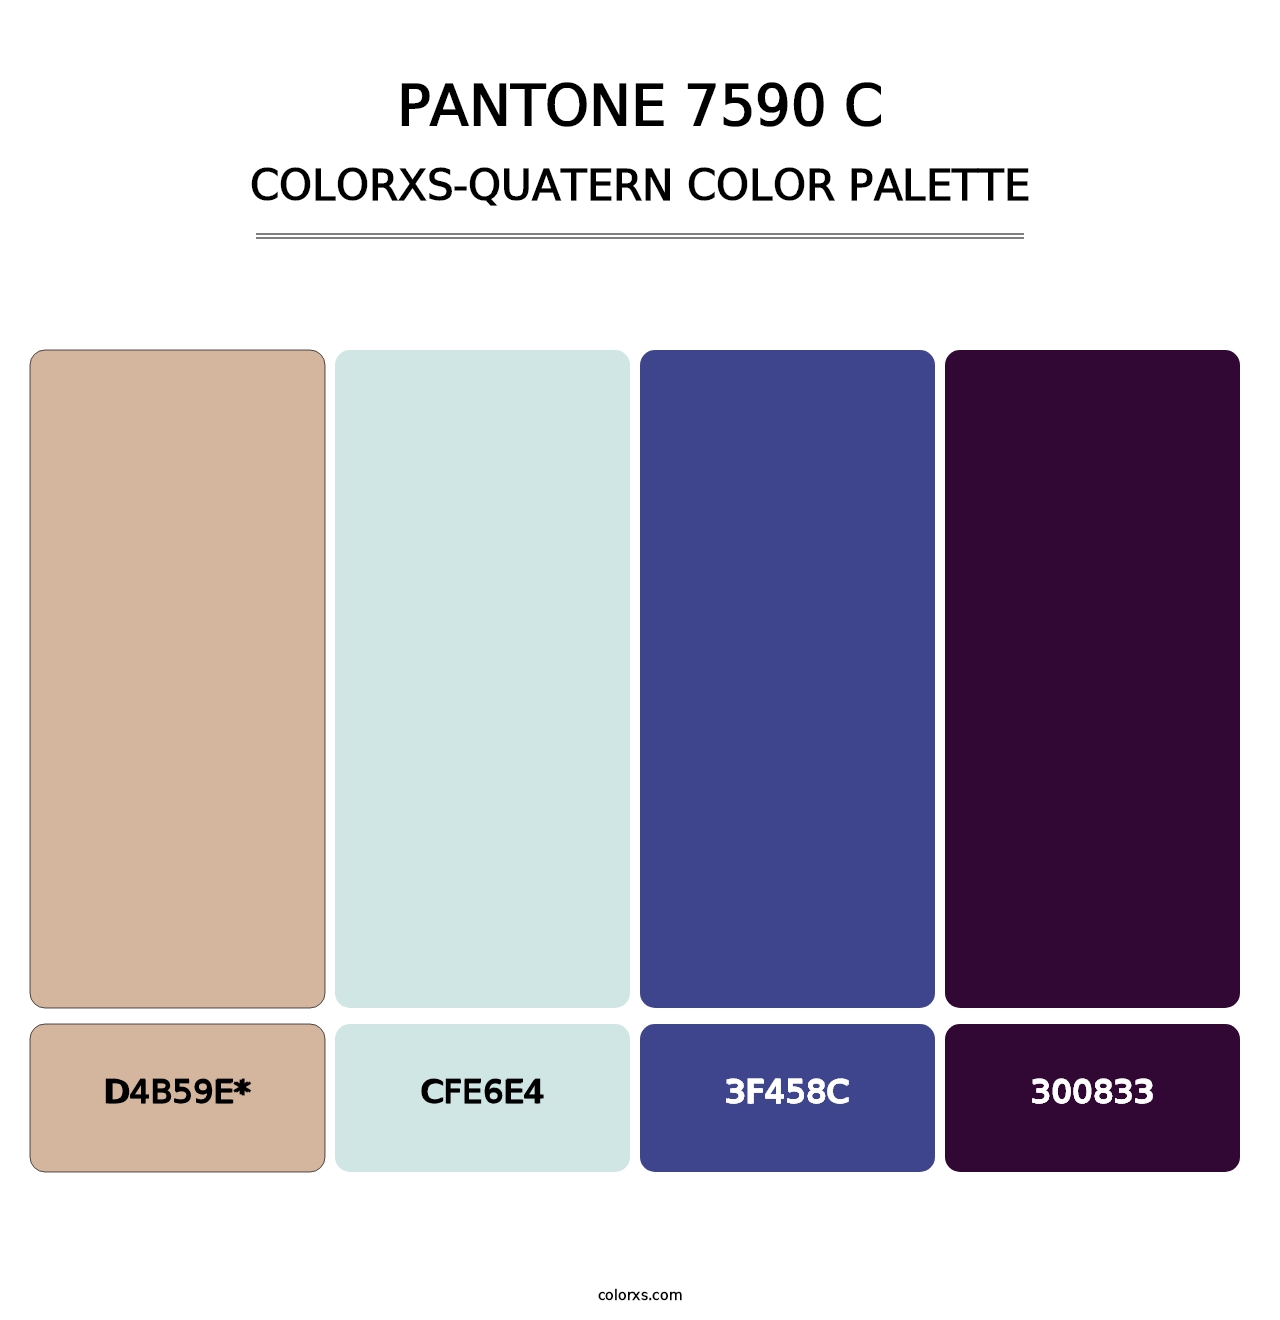 PANTONE 7590 C - Colorxs Quatern Palette